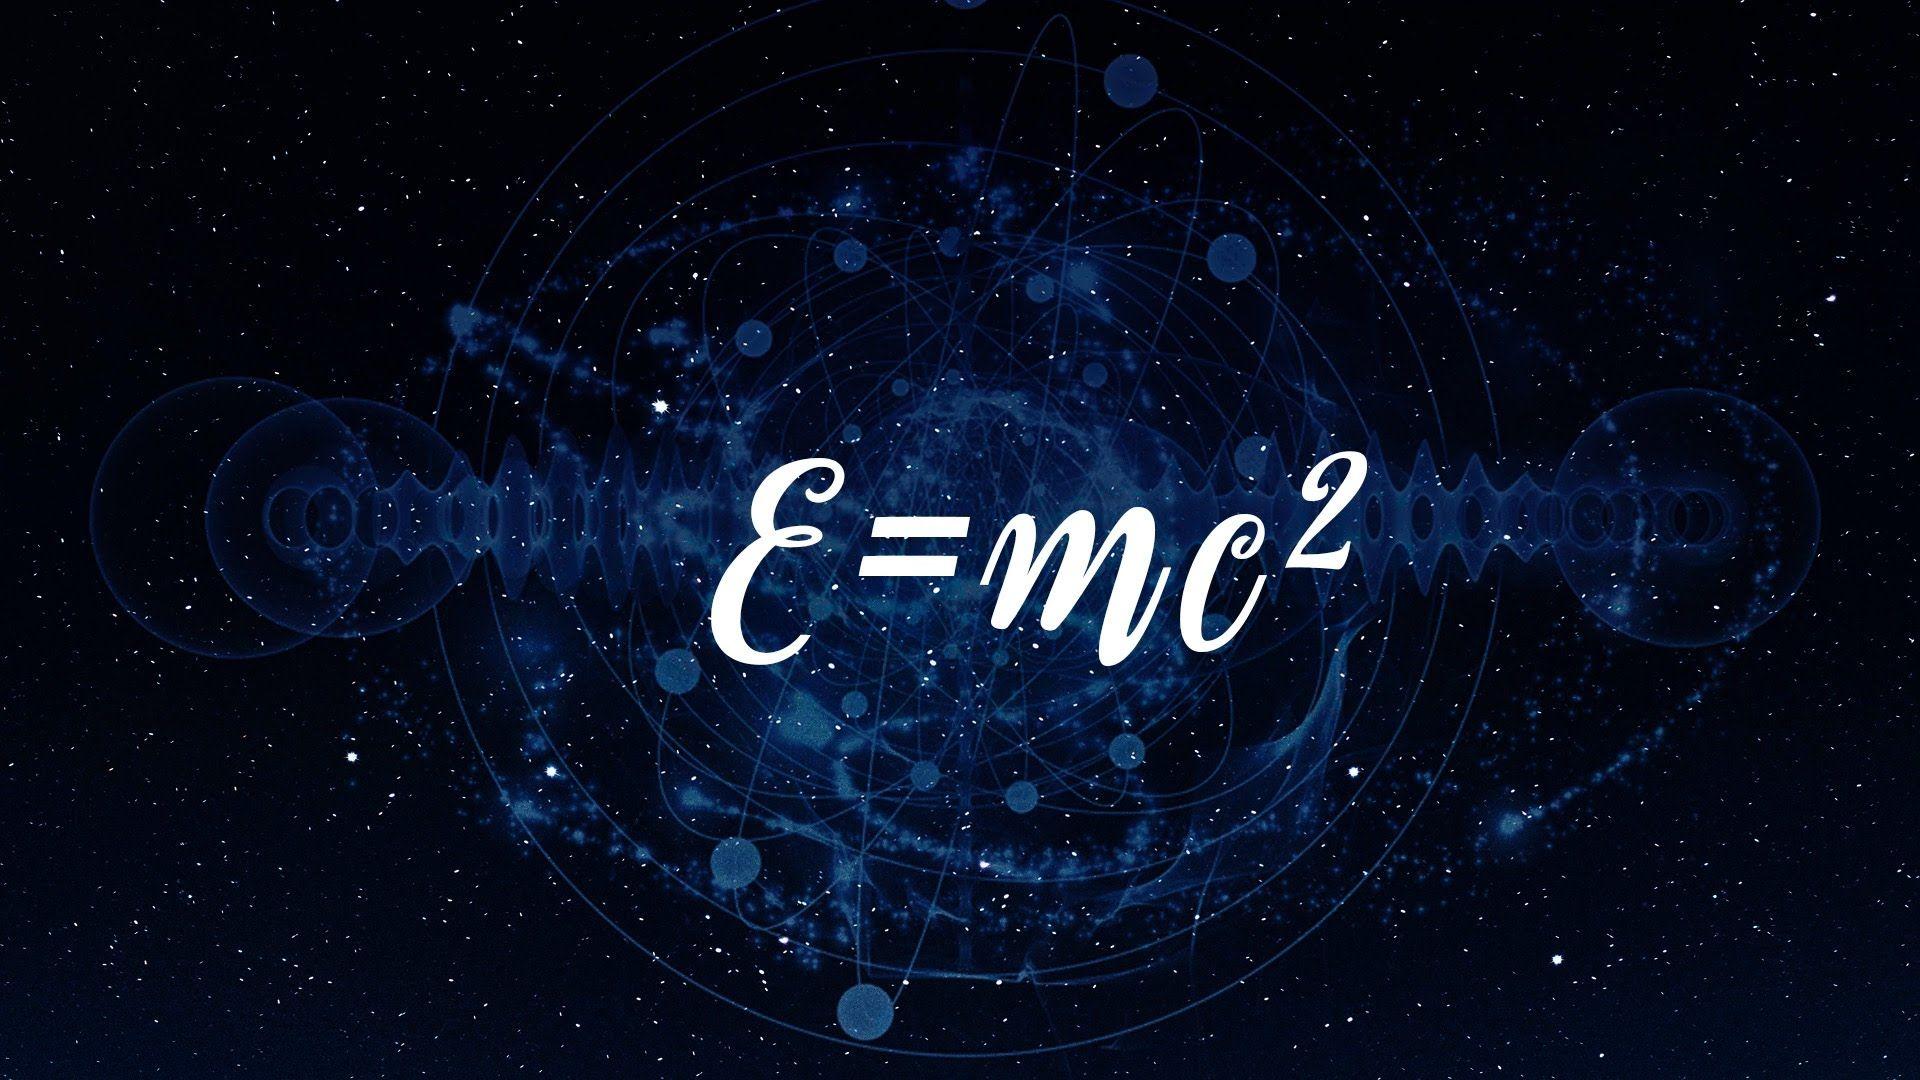 Мс фон. Е мс2 формула Эйнштейна. Теория относительности Эйнштейна e mc2. E=mc². MC-2.